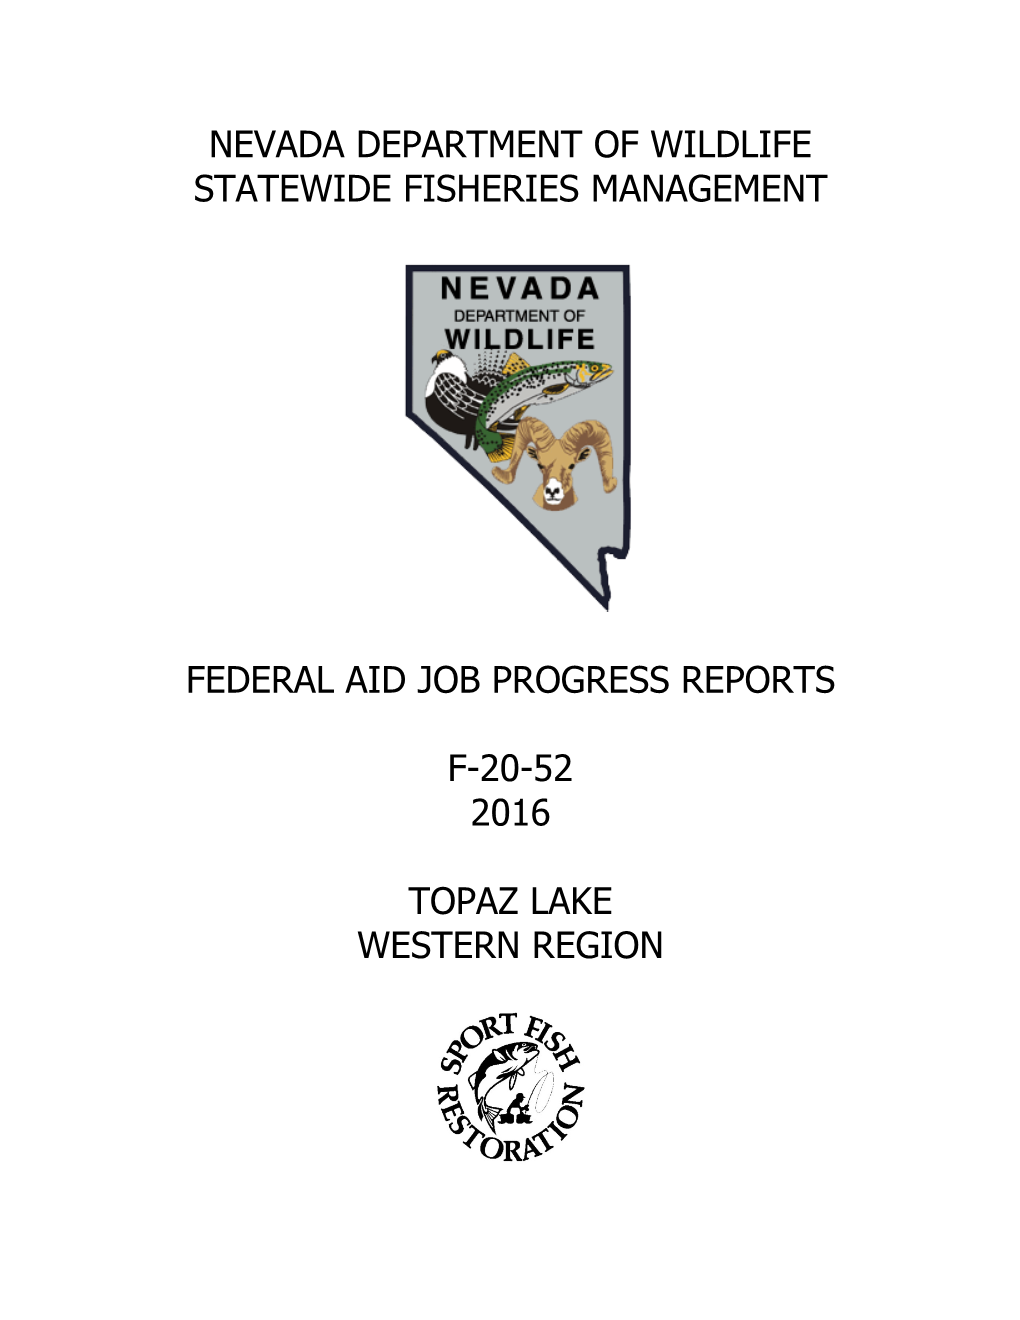 Nevada Division of Wildlife